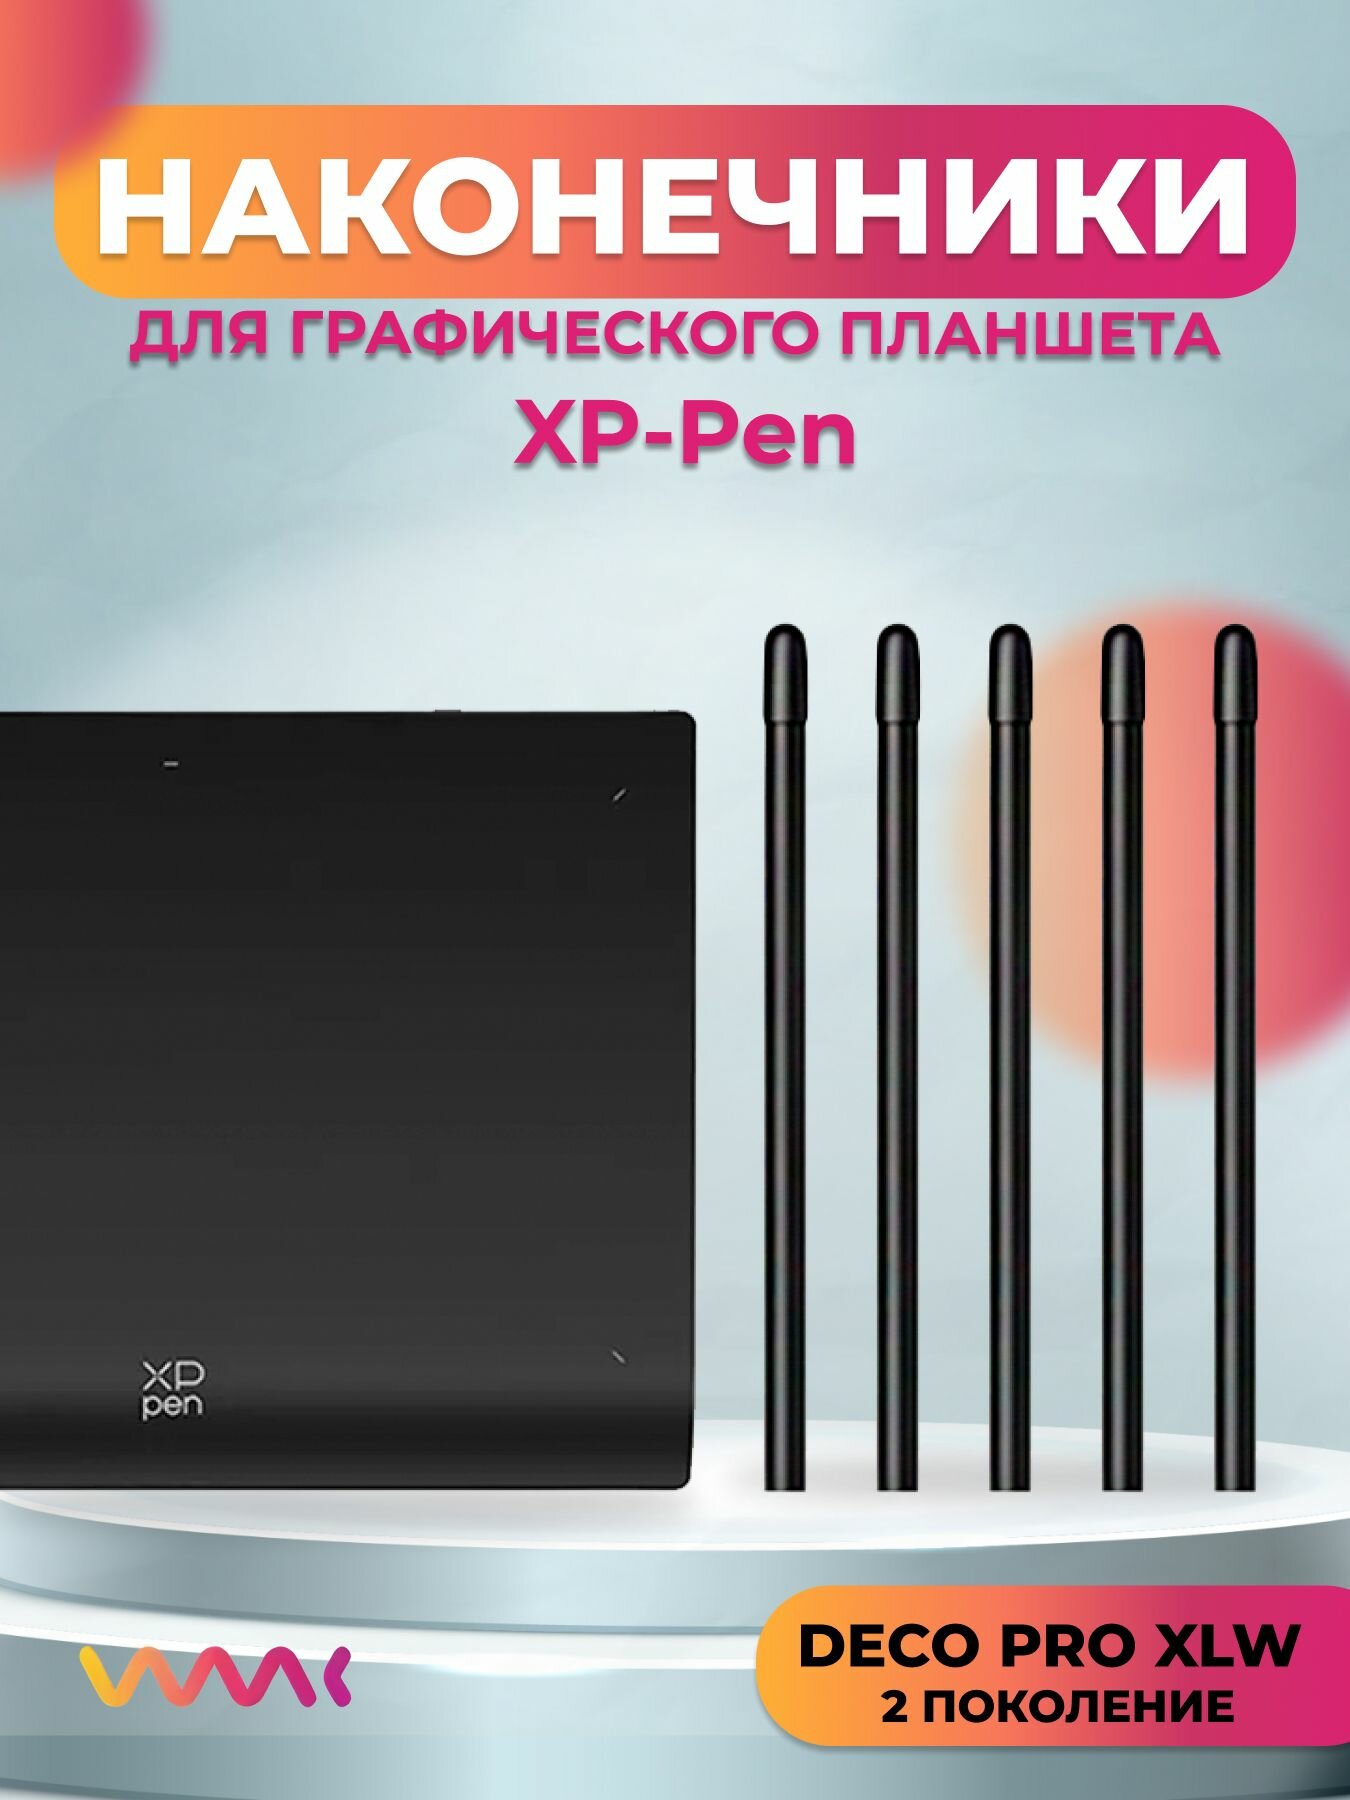 Наконечники для XP-Pen Deco Pro XLW 2nd(5 шт.)